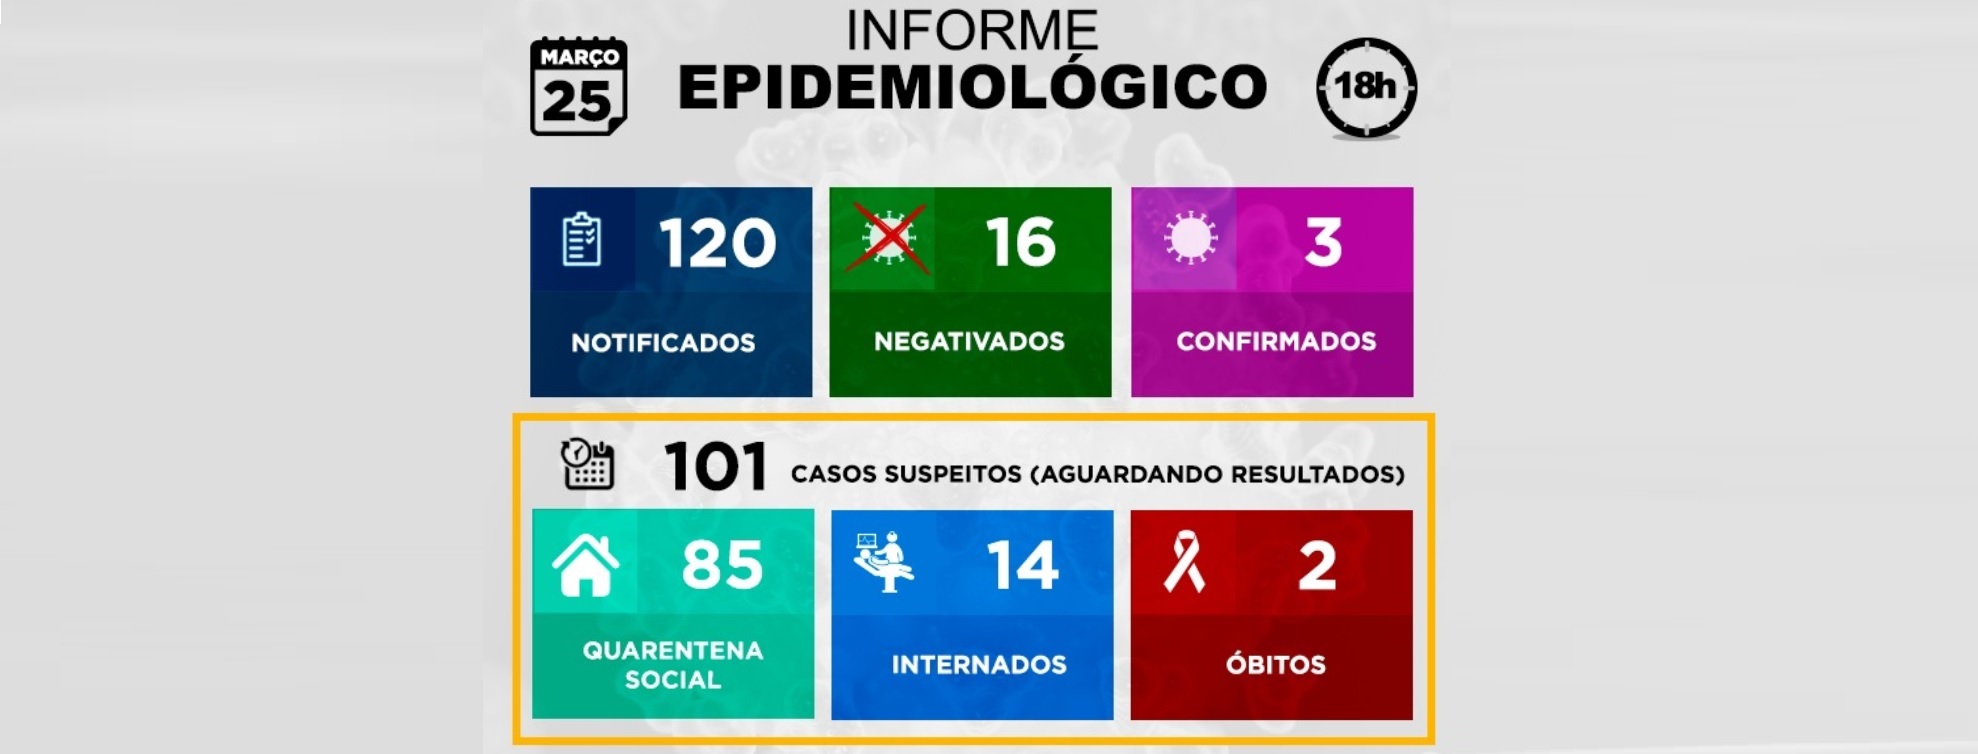  Jundiaí tem duas mortes suspeitas de coronavírus e 14 internados em hospitais daqui